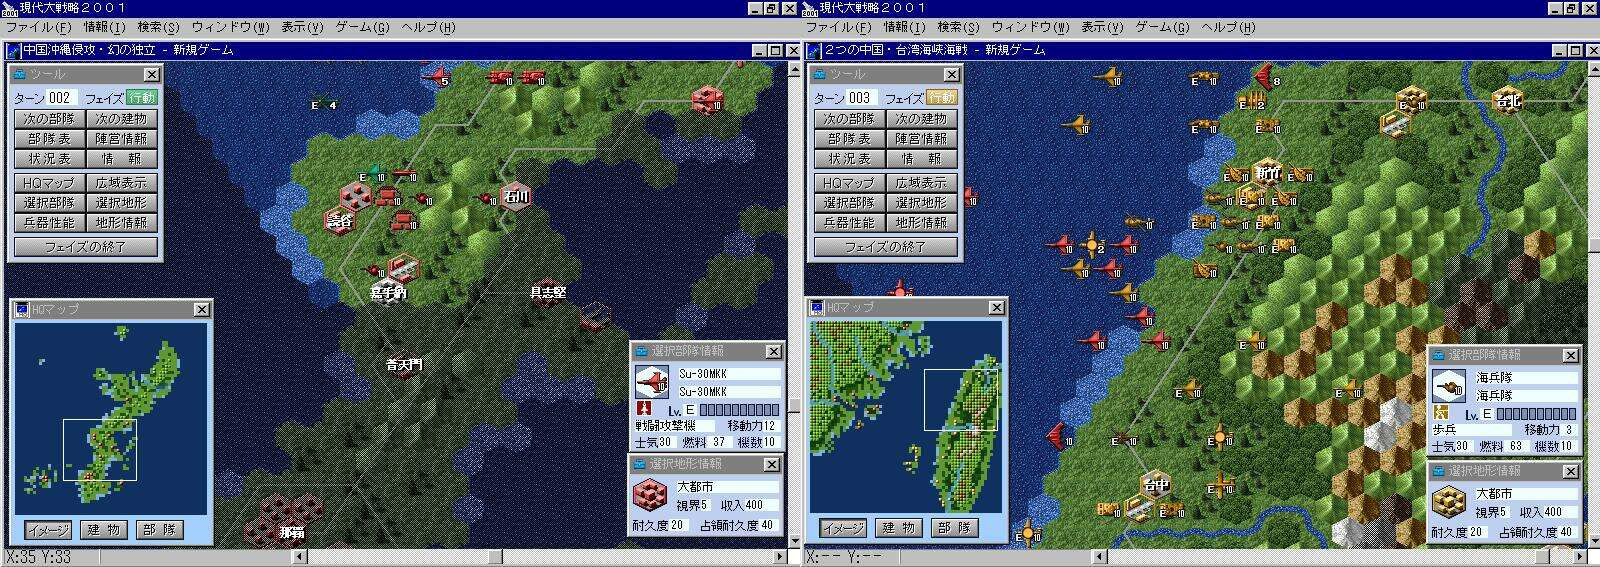 Daisenryaku 2001 oyununun oynanış görüntüleri